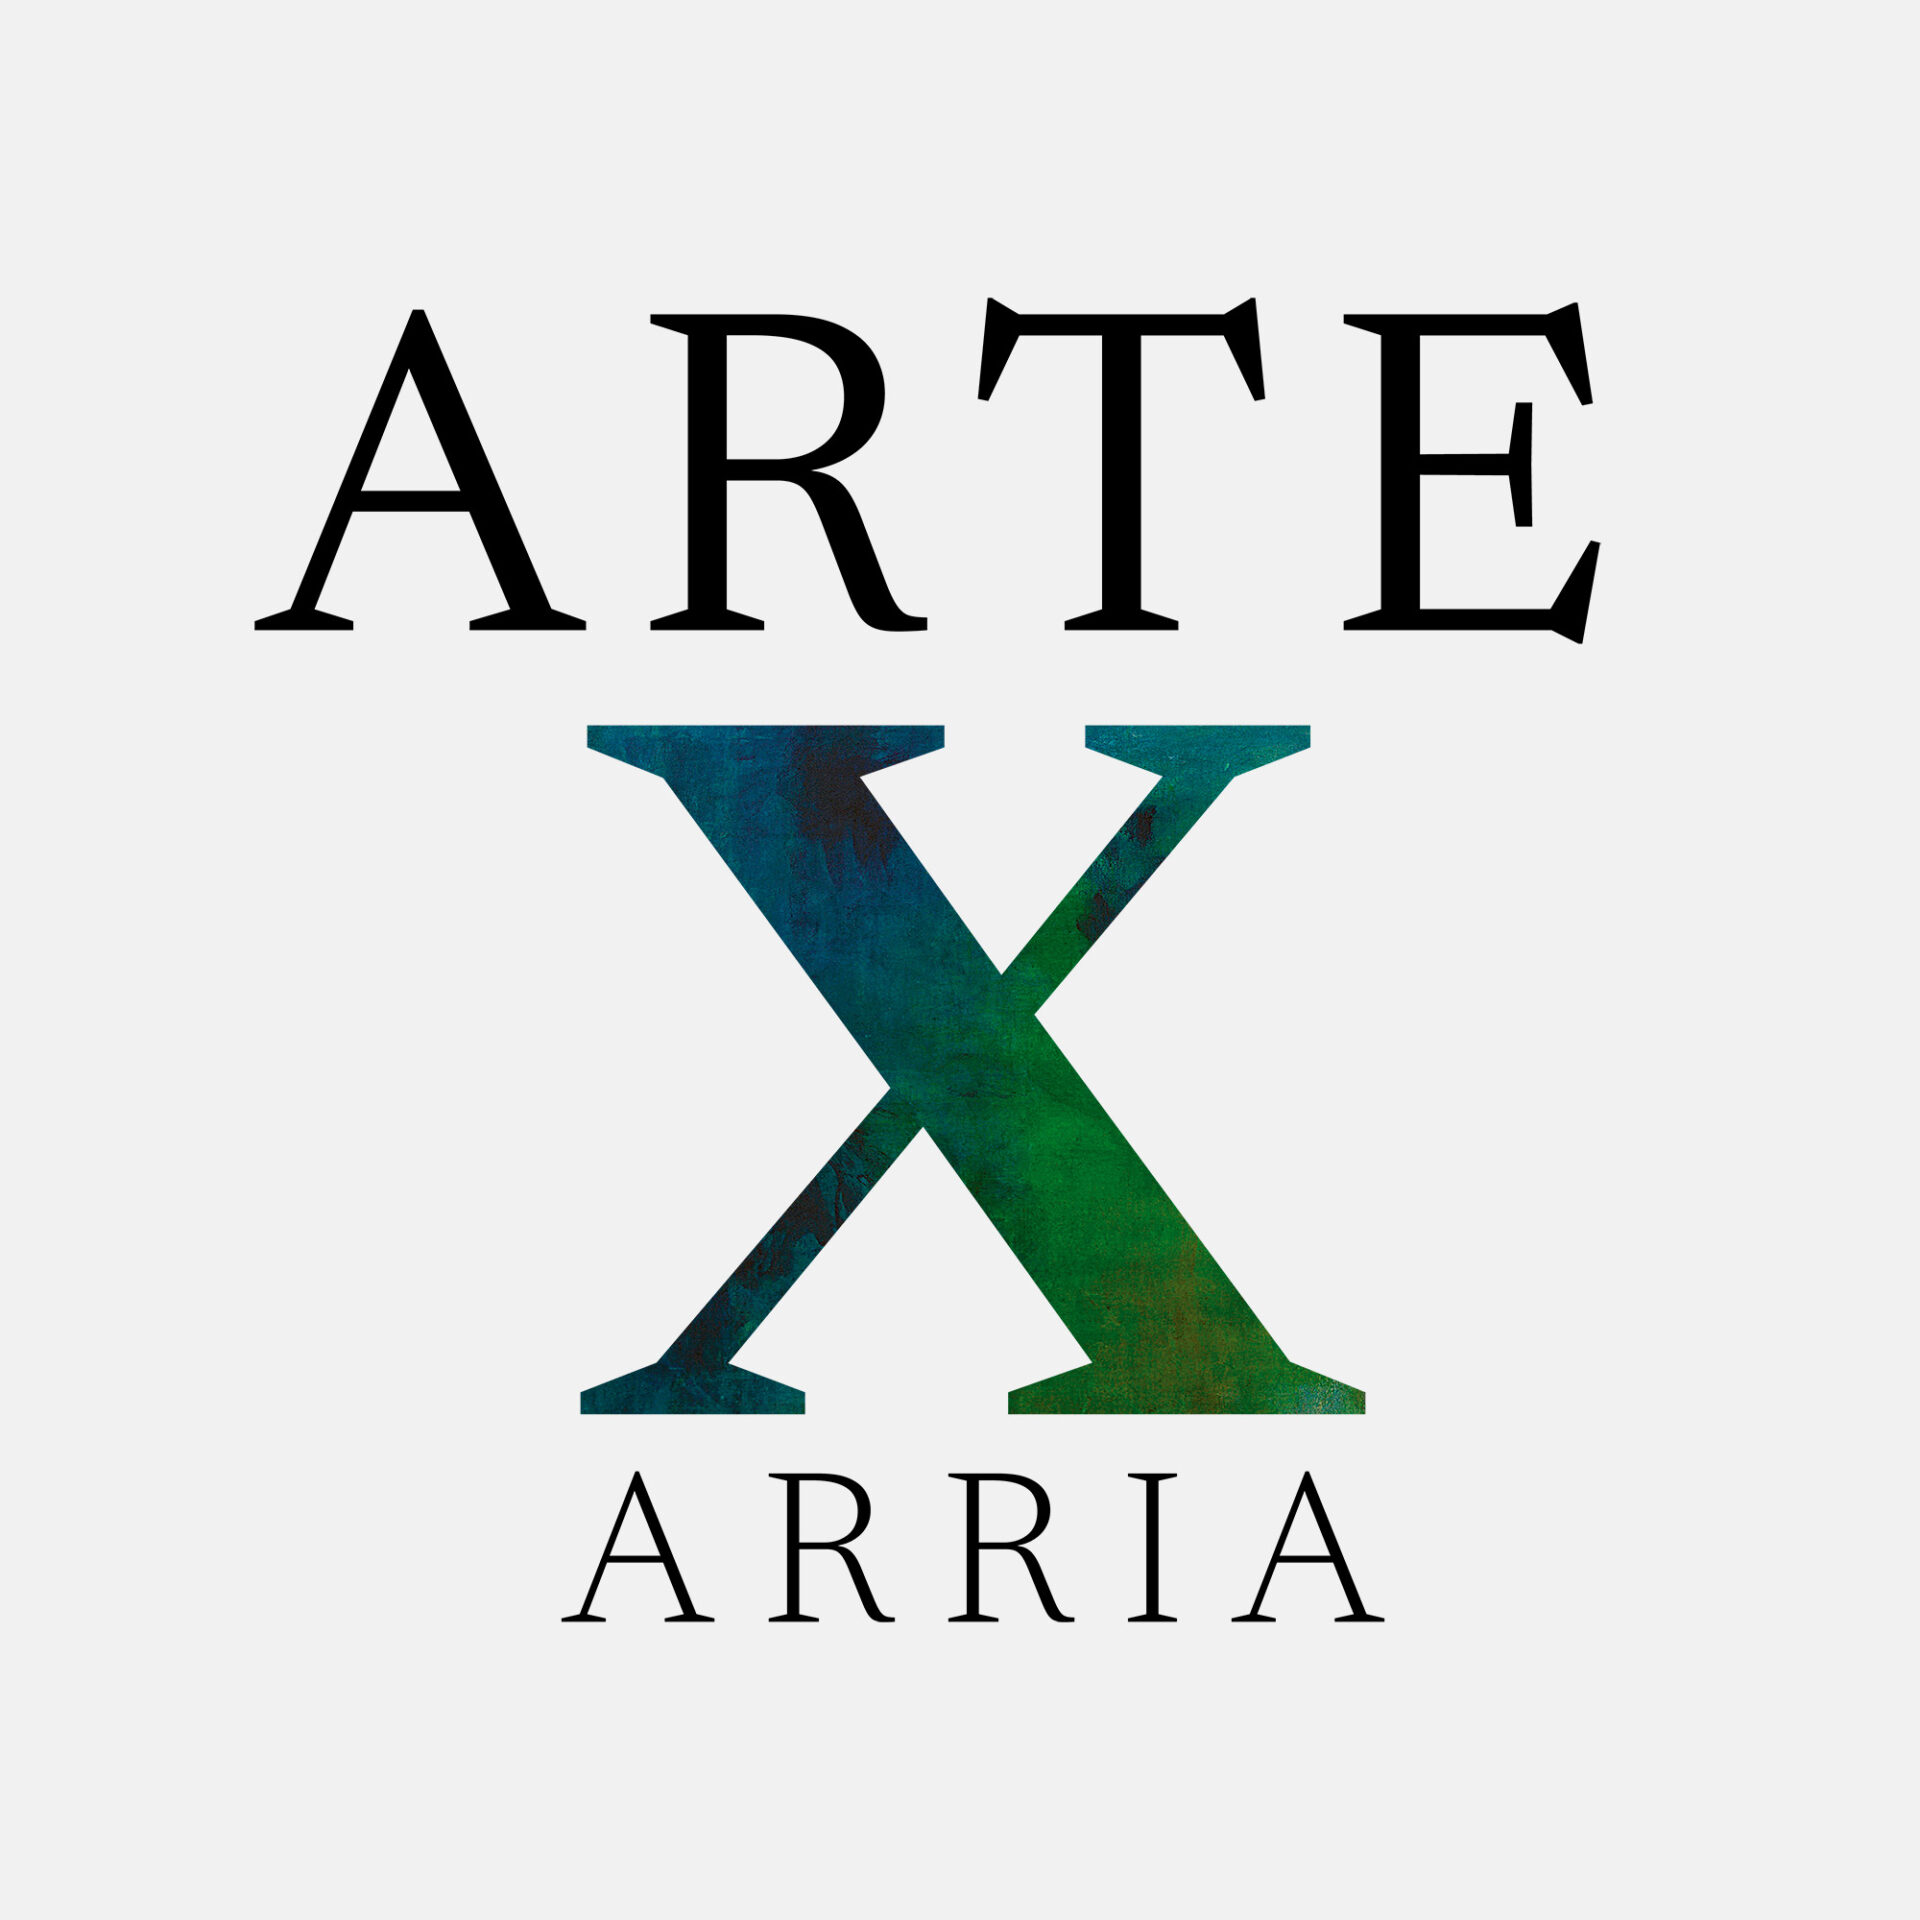 ARTE X ARRIA rinde homenaje a María Eugenia Arria en Reset Gallery